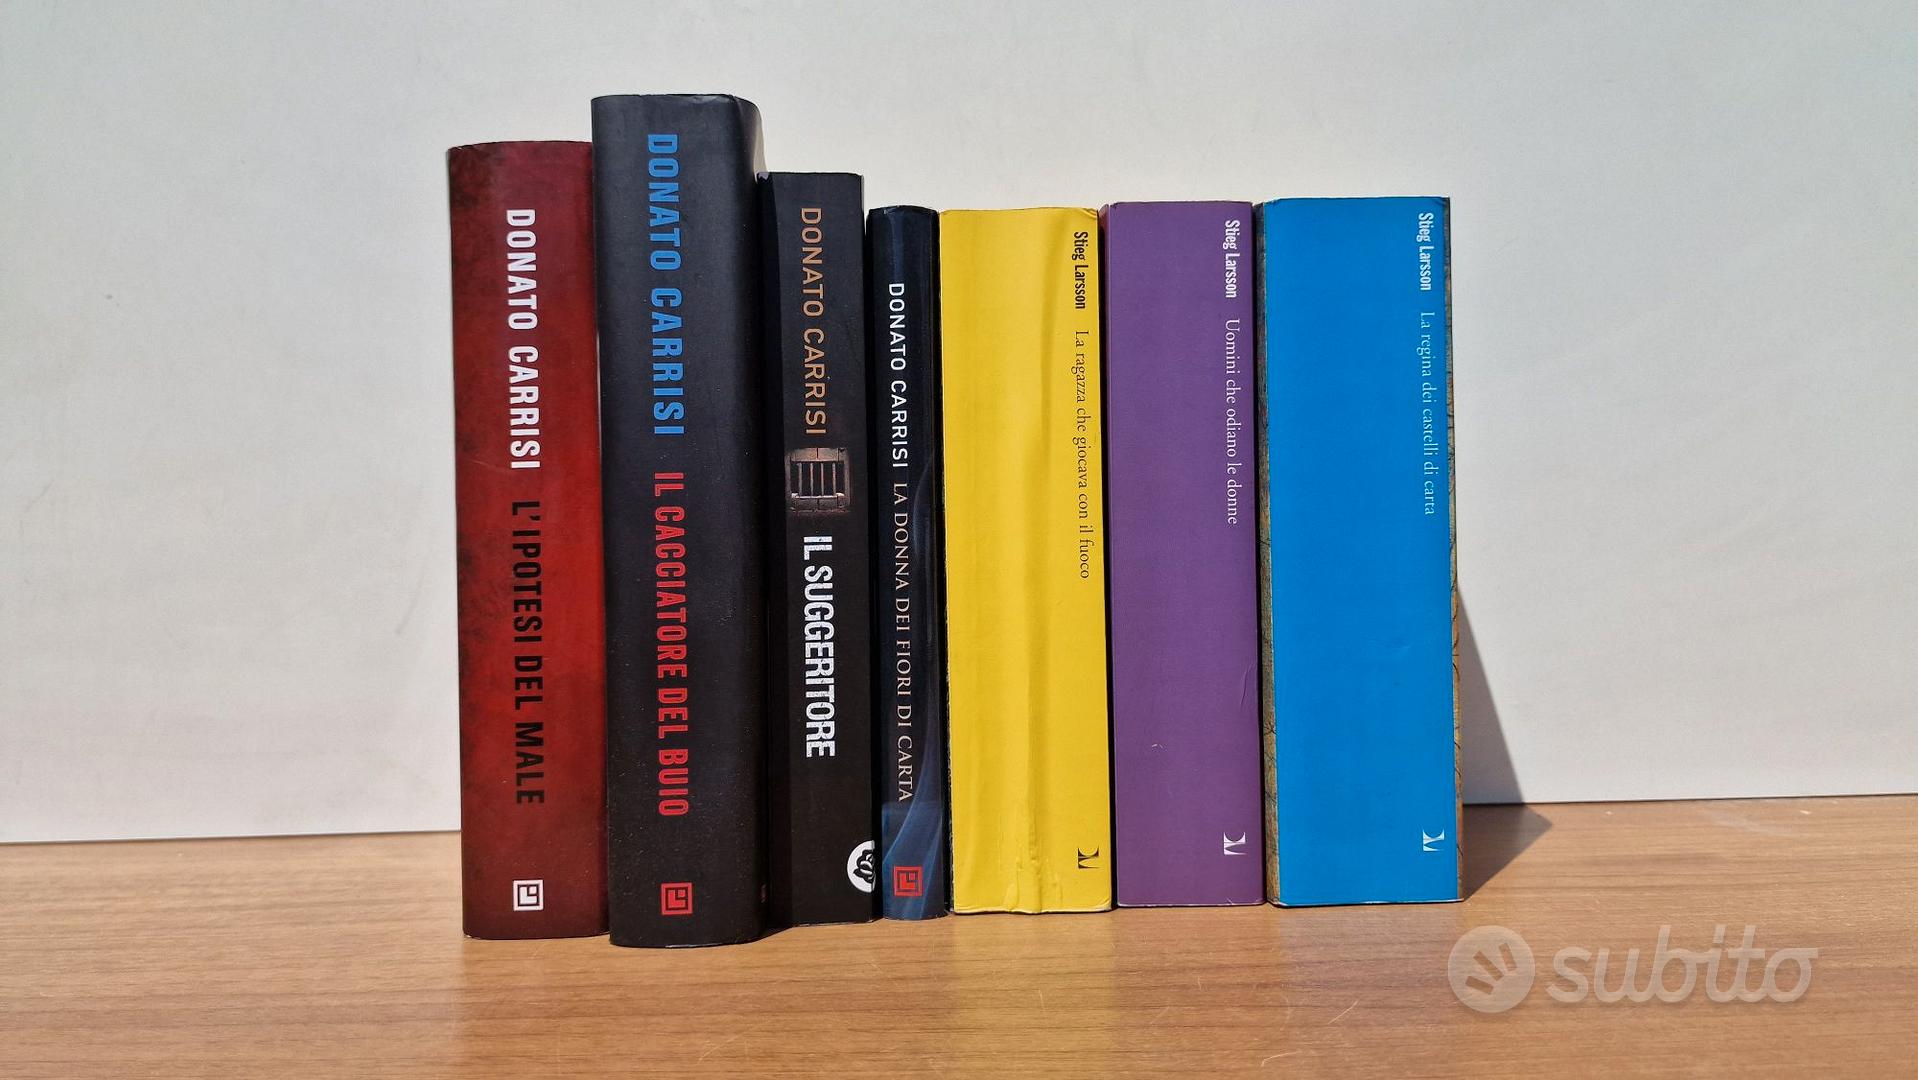 Libri Donato Carrisi / Stieg Larsson - Libri e Riviste In vendita